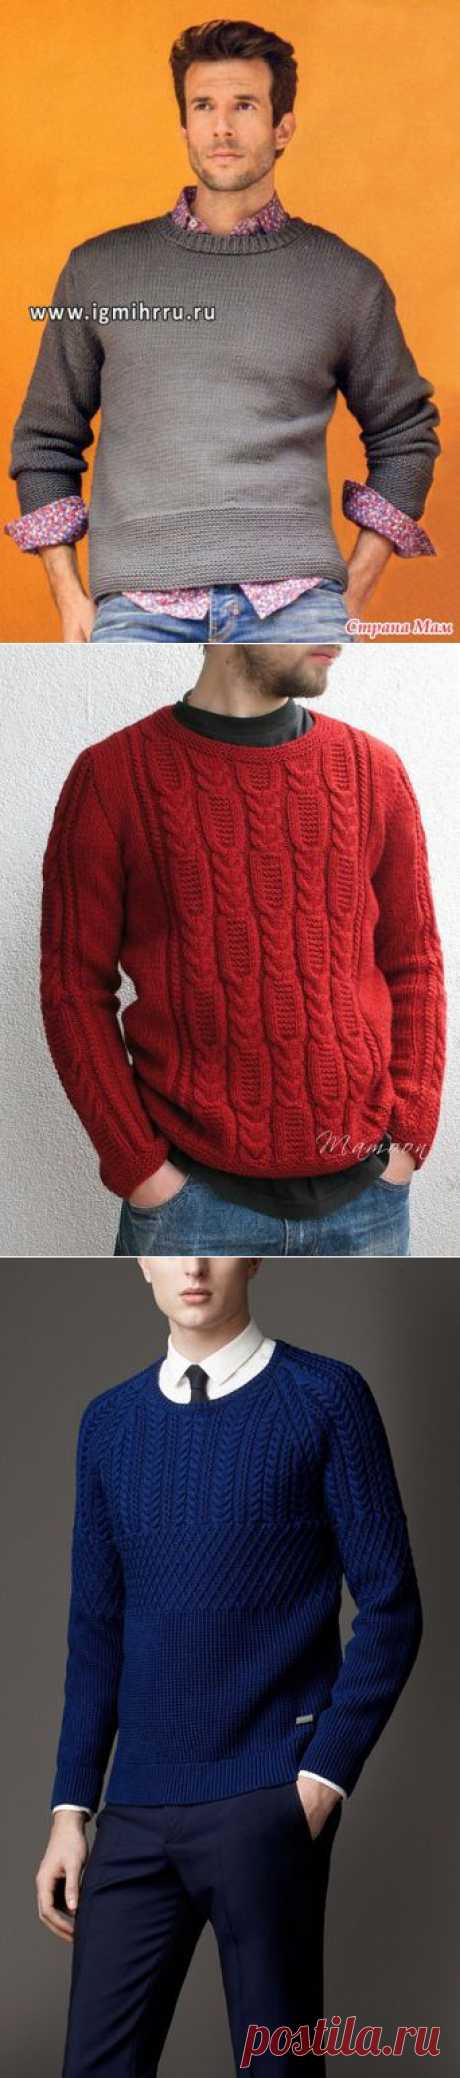 Мужские пуловеры ( подборка) - Вязание - Страна Мам